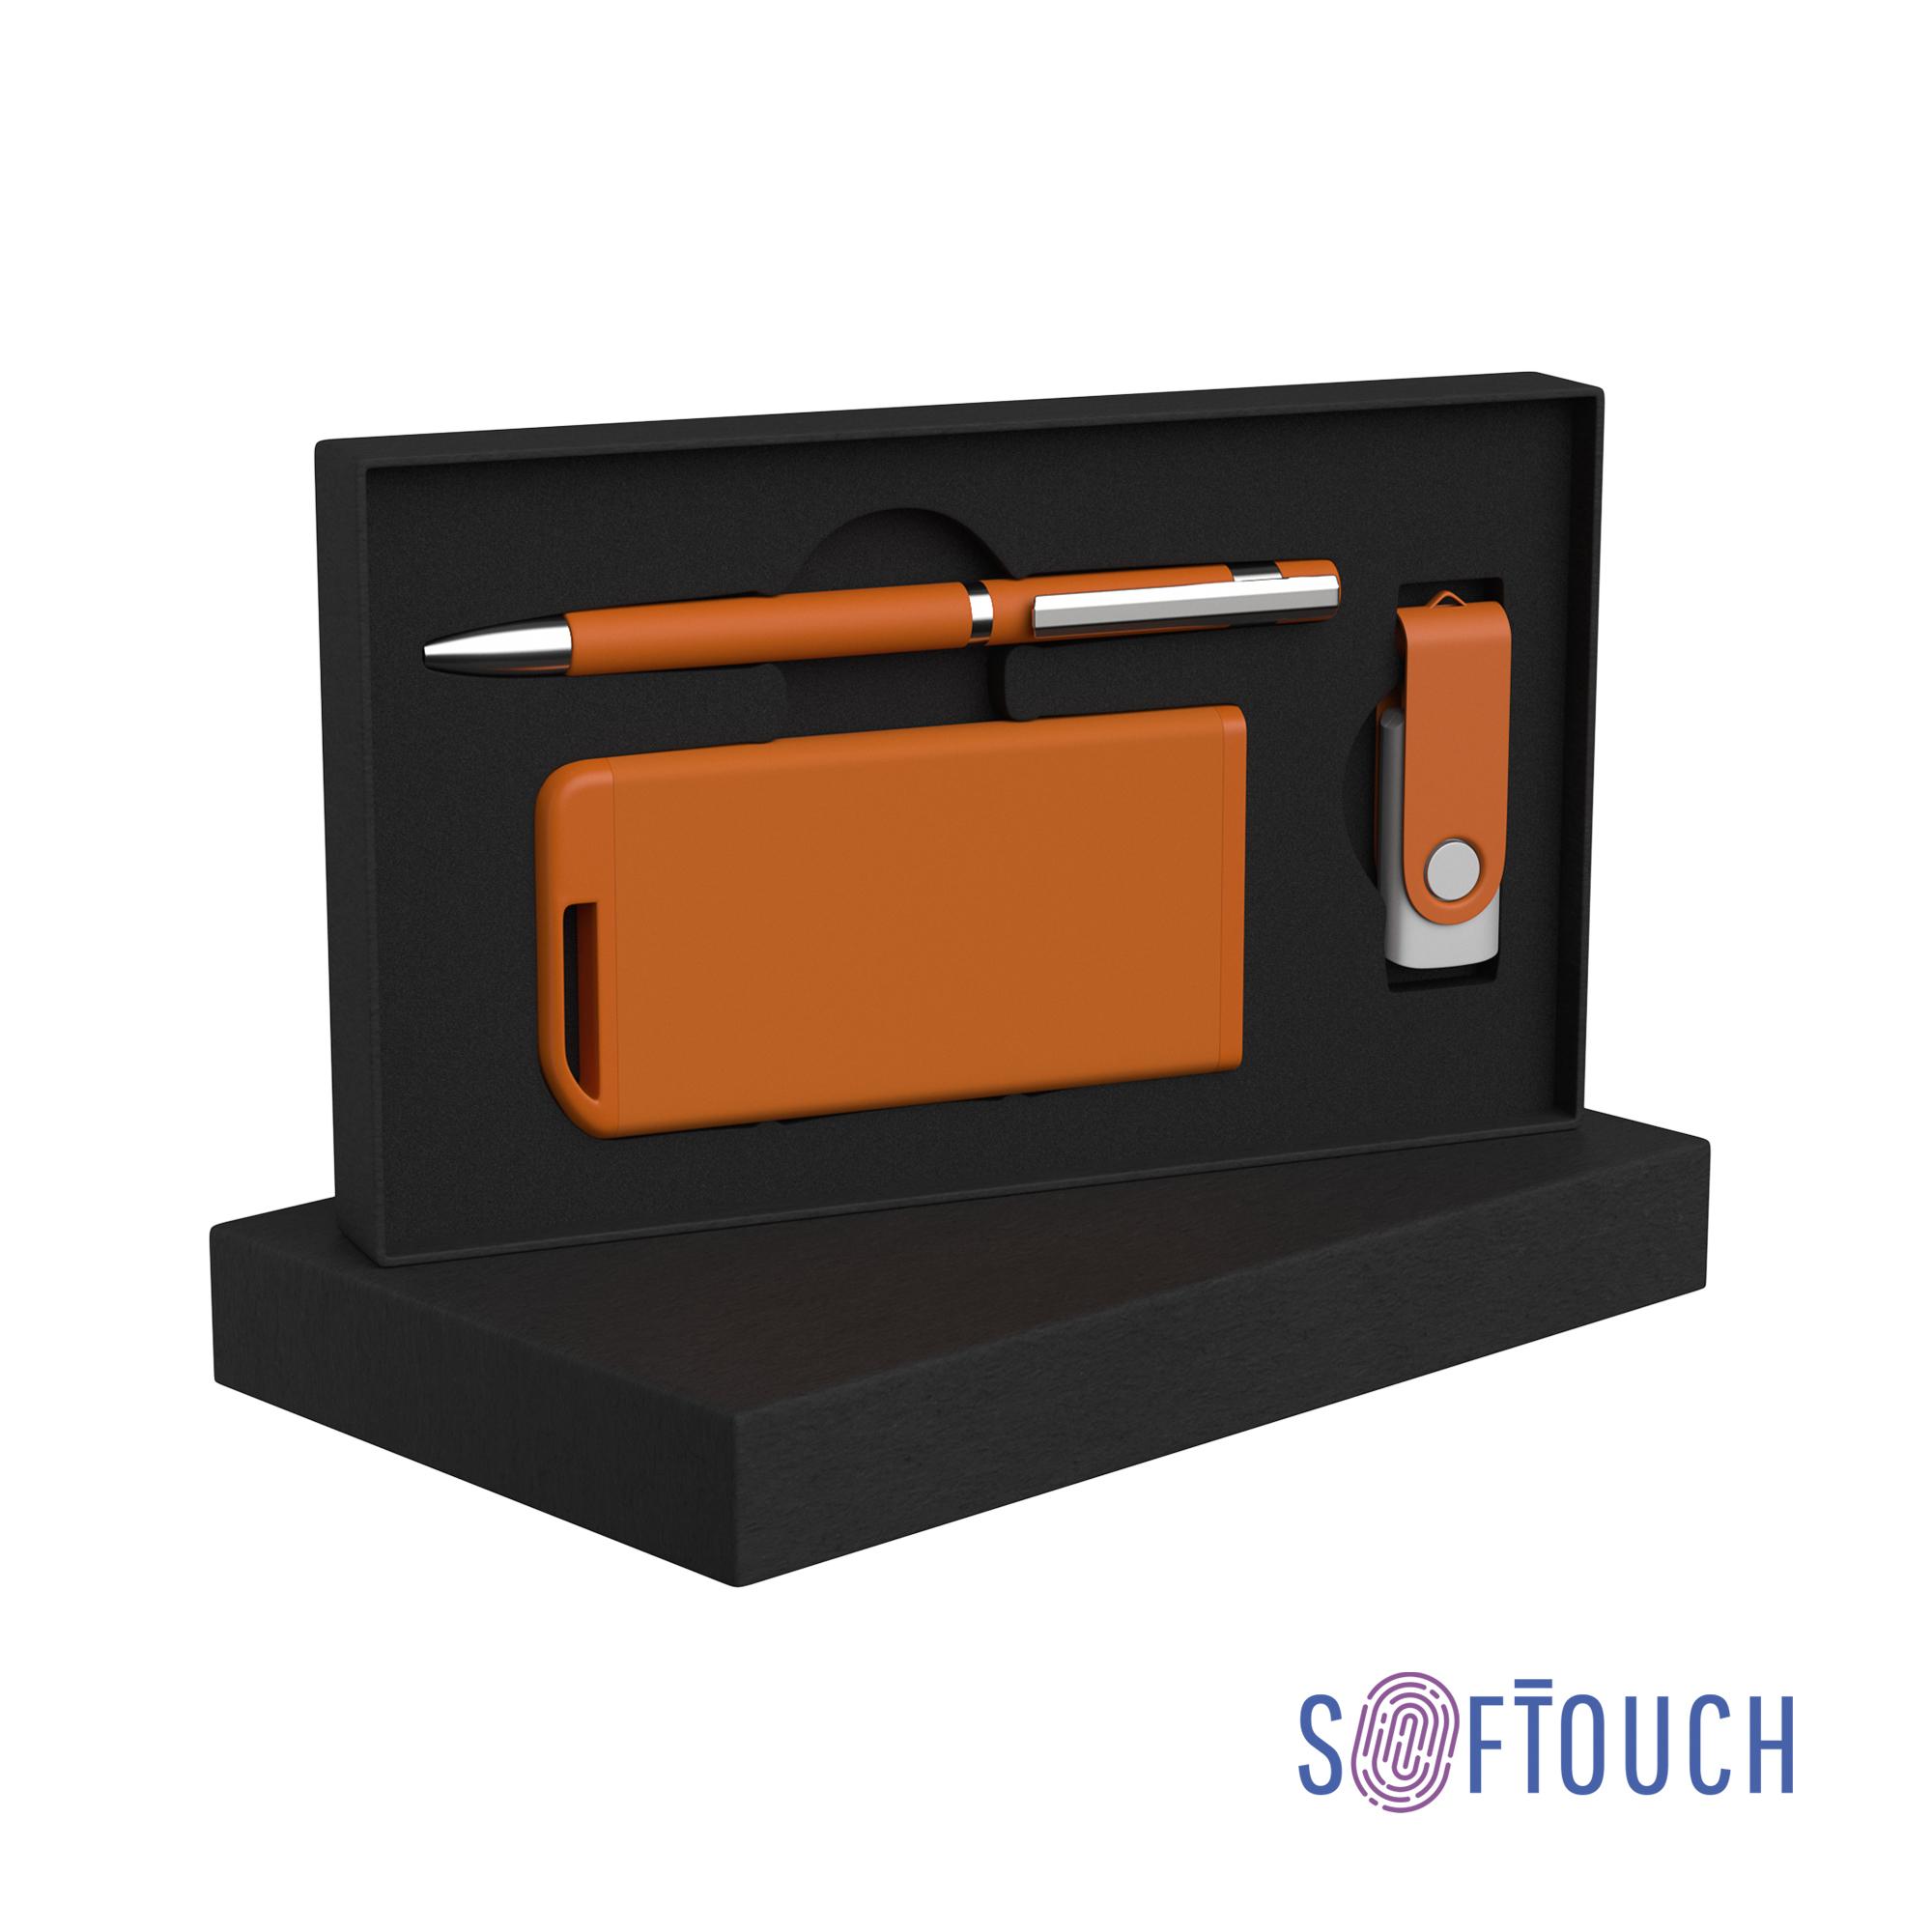 Набор ручка + флеш-карта 8Гб + зарядное устройство 4000 mAh soft touch, цвет оранжевый